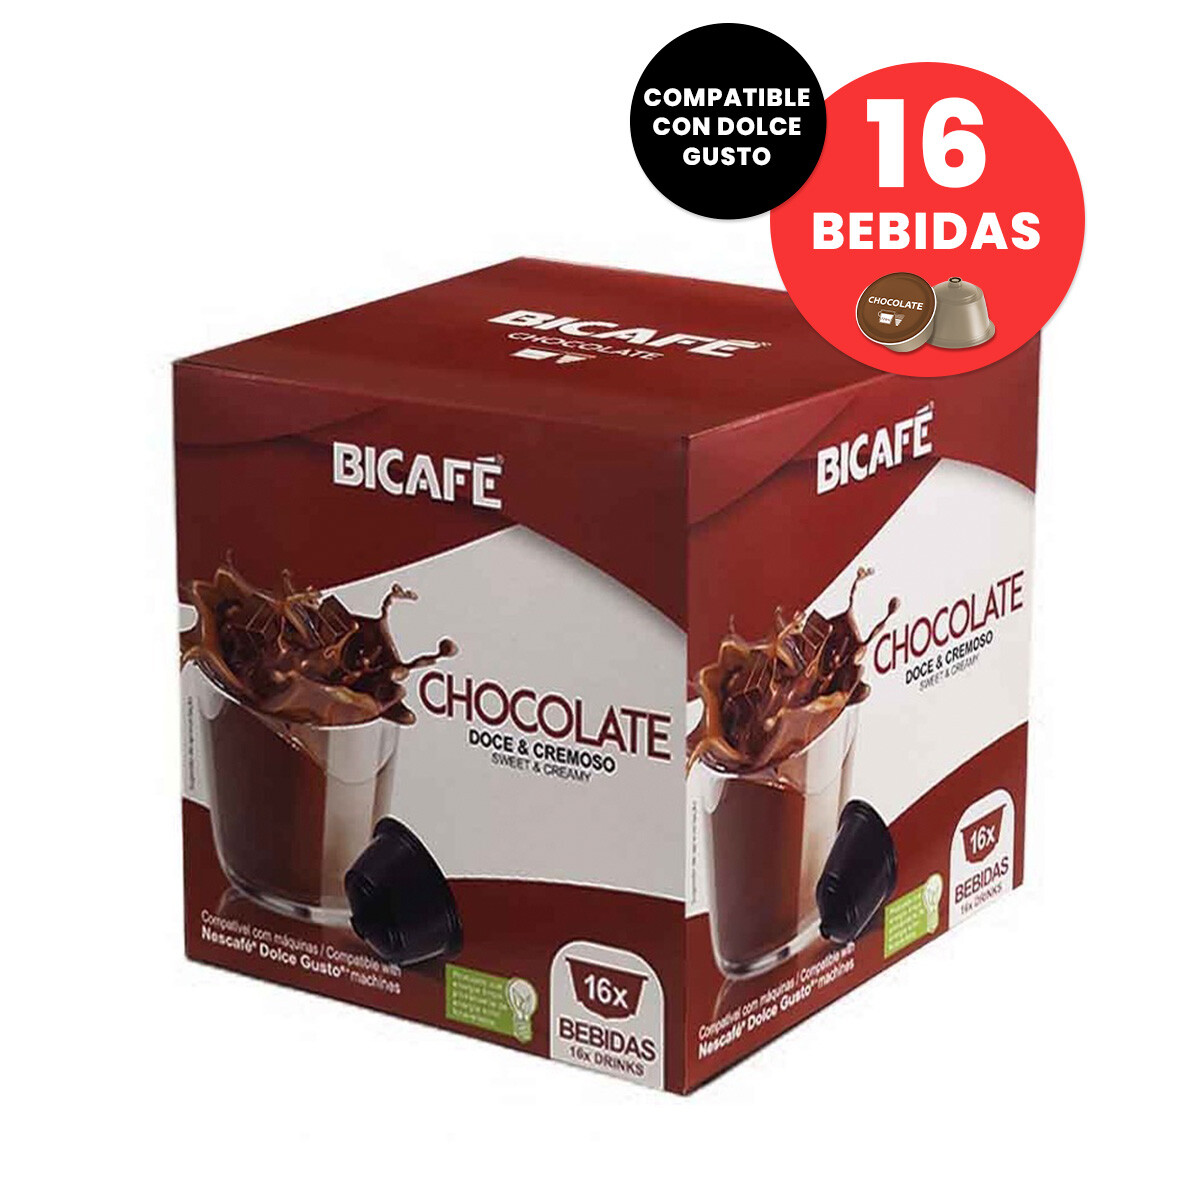 Capsulas Bicafe Chocolate Compatible Dolce Gusto X16 Bebidas - 001 